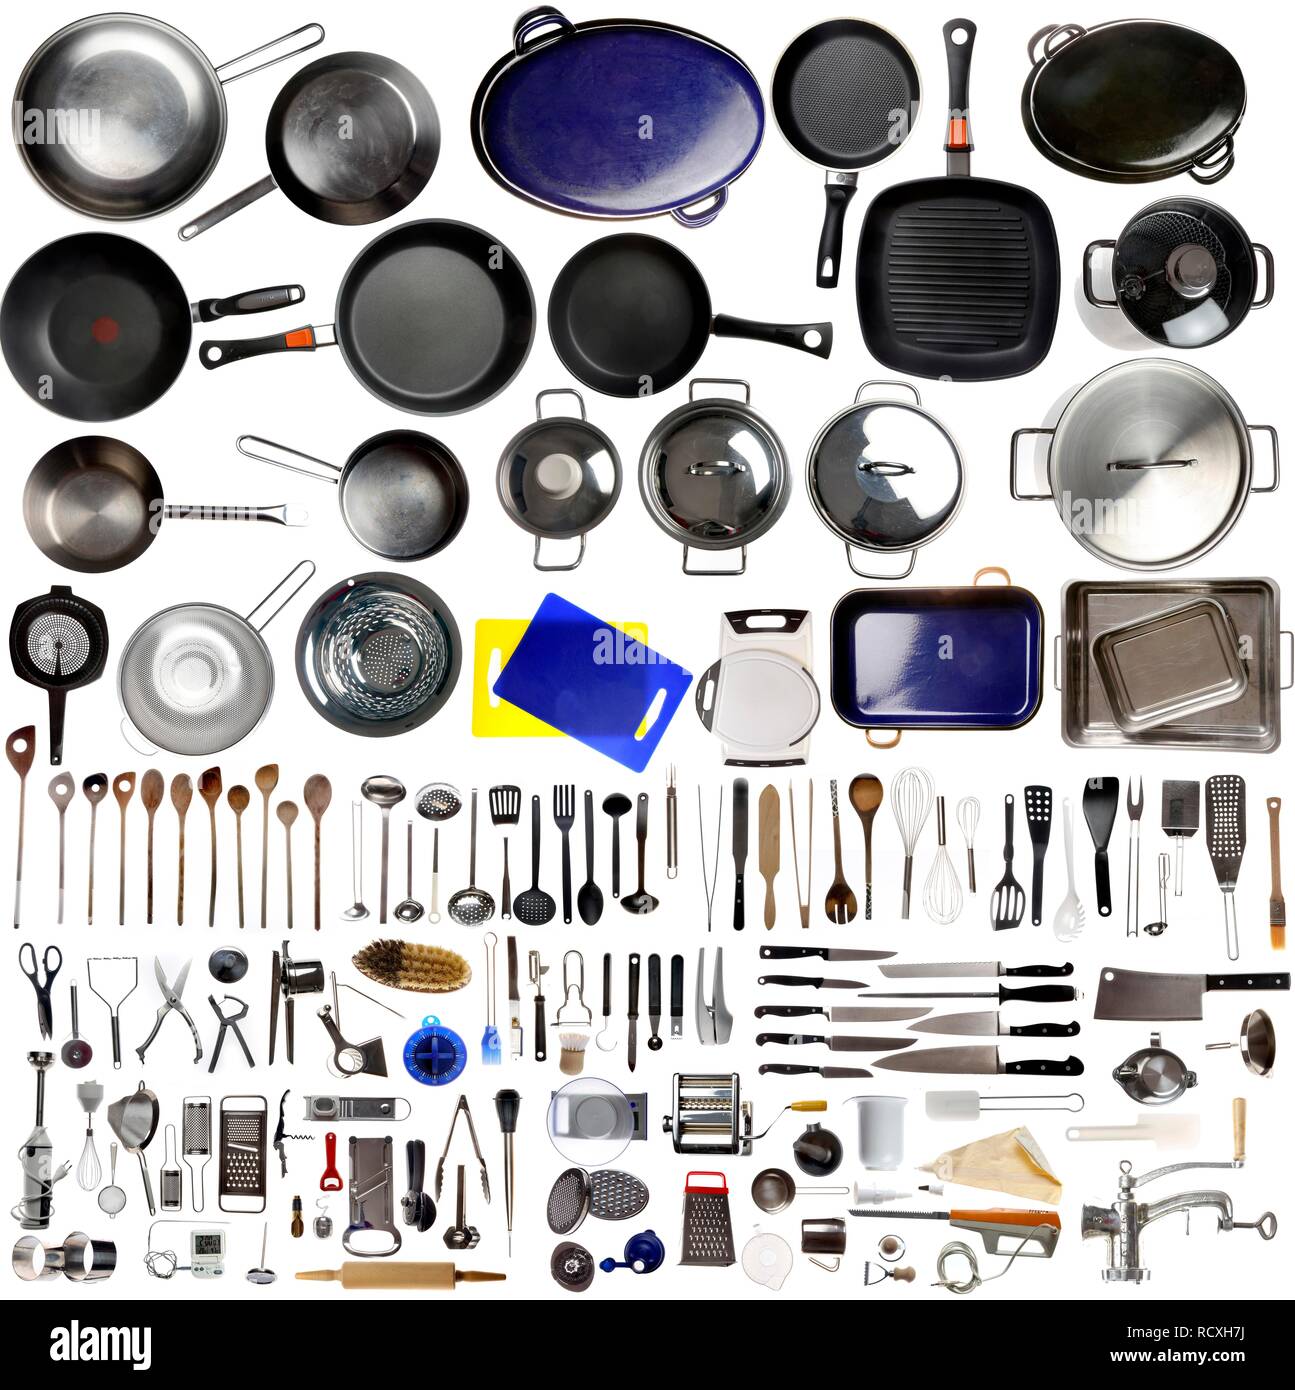 https://c8.alamy.com/compes/rcxh7j/diversos-aparatos-de-cocina-herramientas-y-utensilios-de-cocina-rcxh7j.jpg